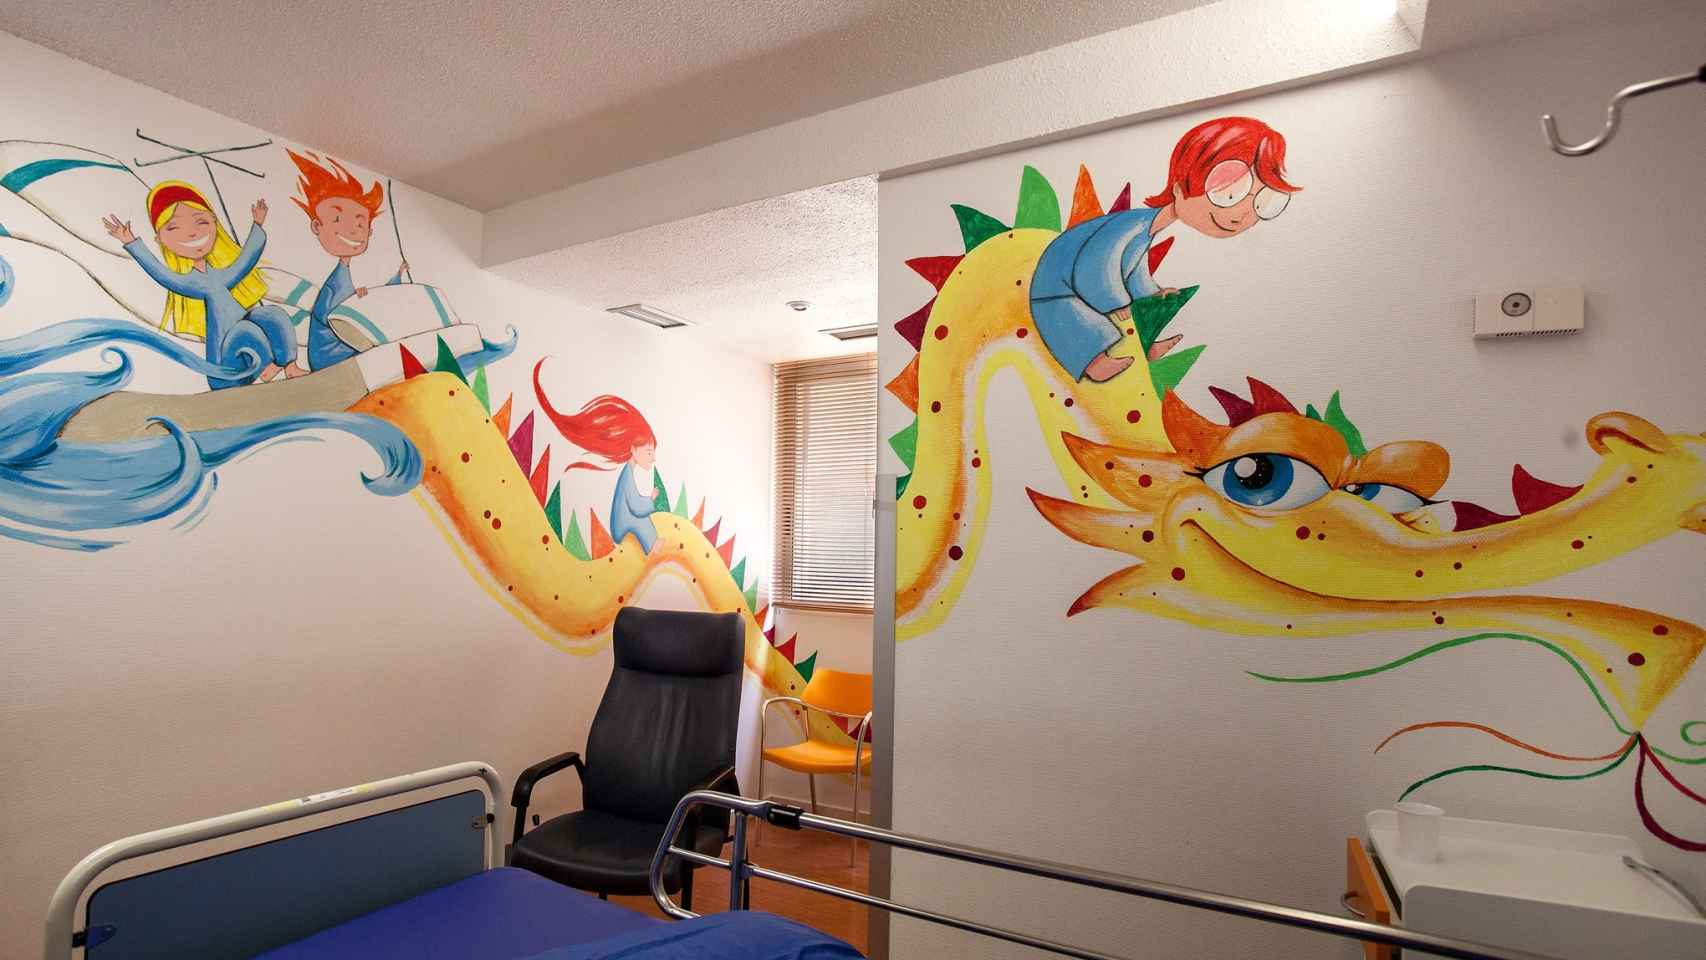 La habitación del dragón, pintada por el ilustrador David Guirao.